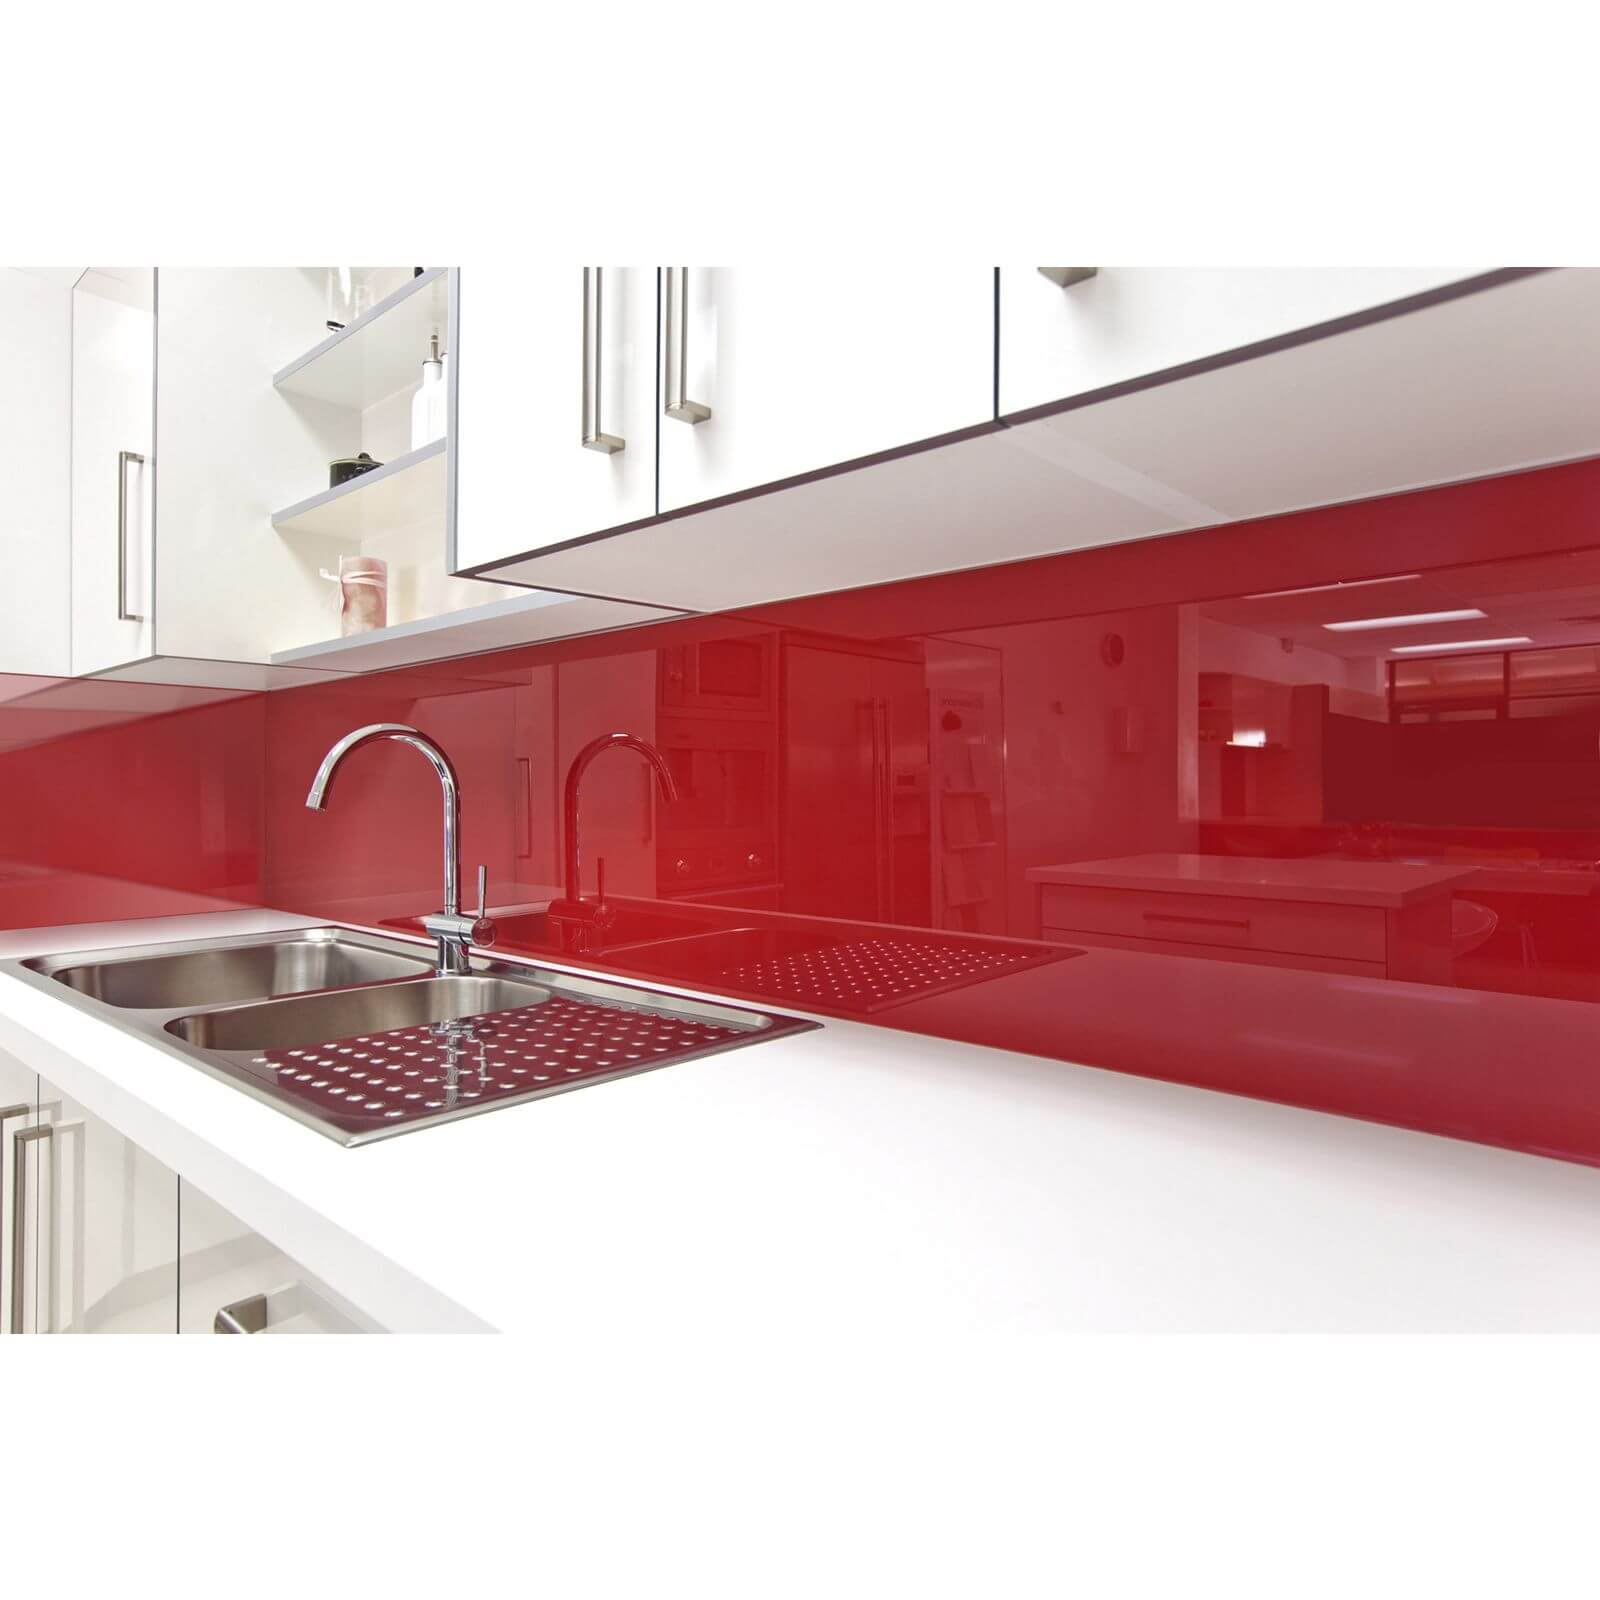 Zenolite Acrylic Kitchen Splashback Panel - 760 x 700mm - Red